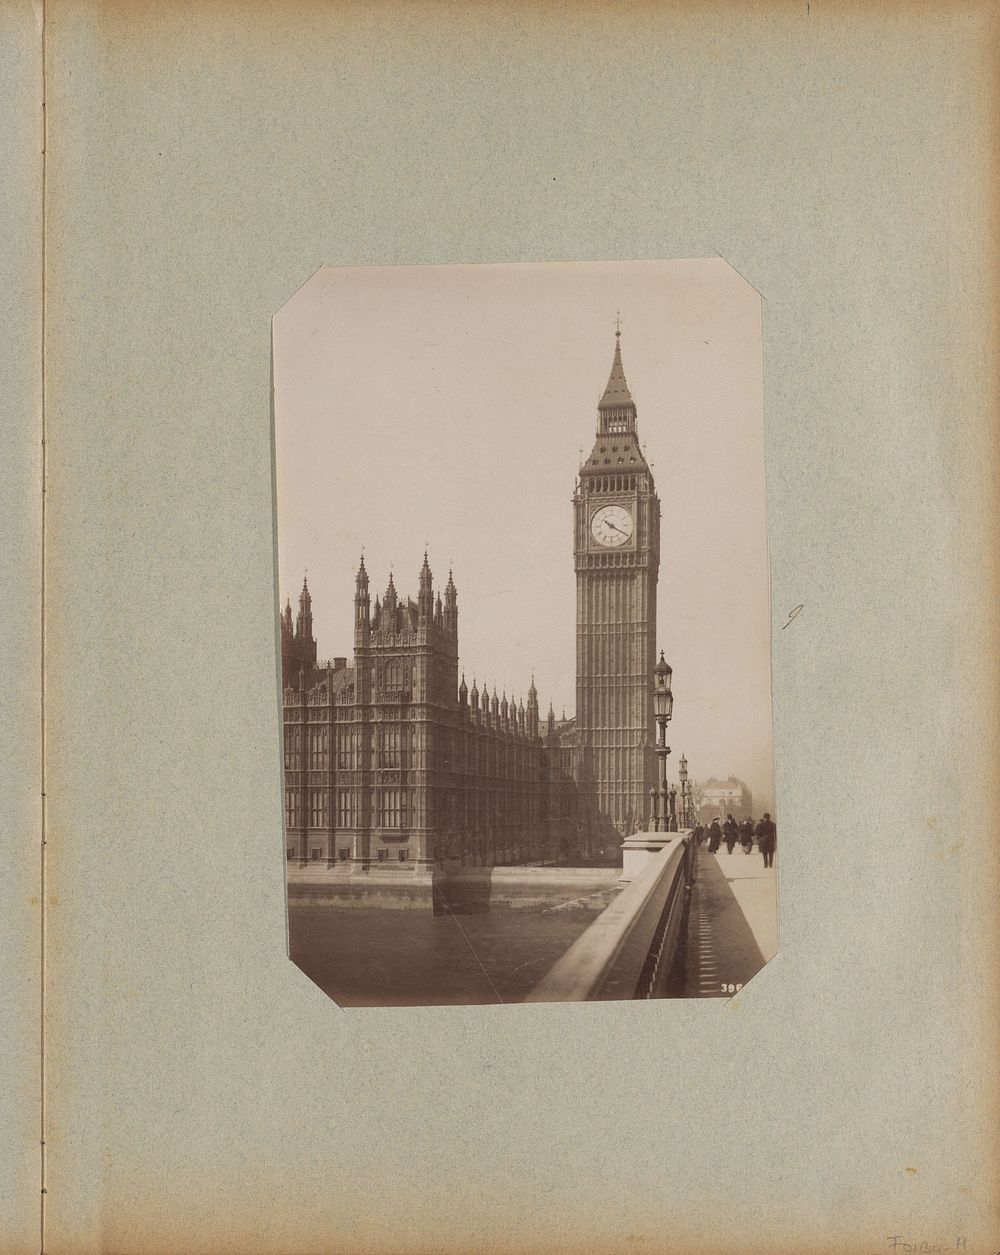 Houses of Parliament en de Big Ben gezien vanaf Westminster Bridge in Londen (c. 1880 - c. 1910) by anonymous